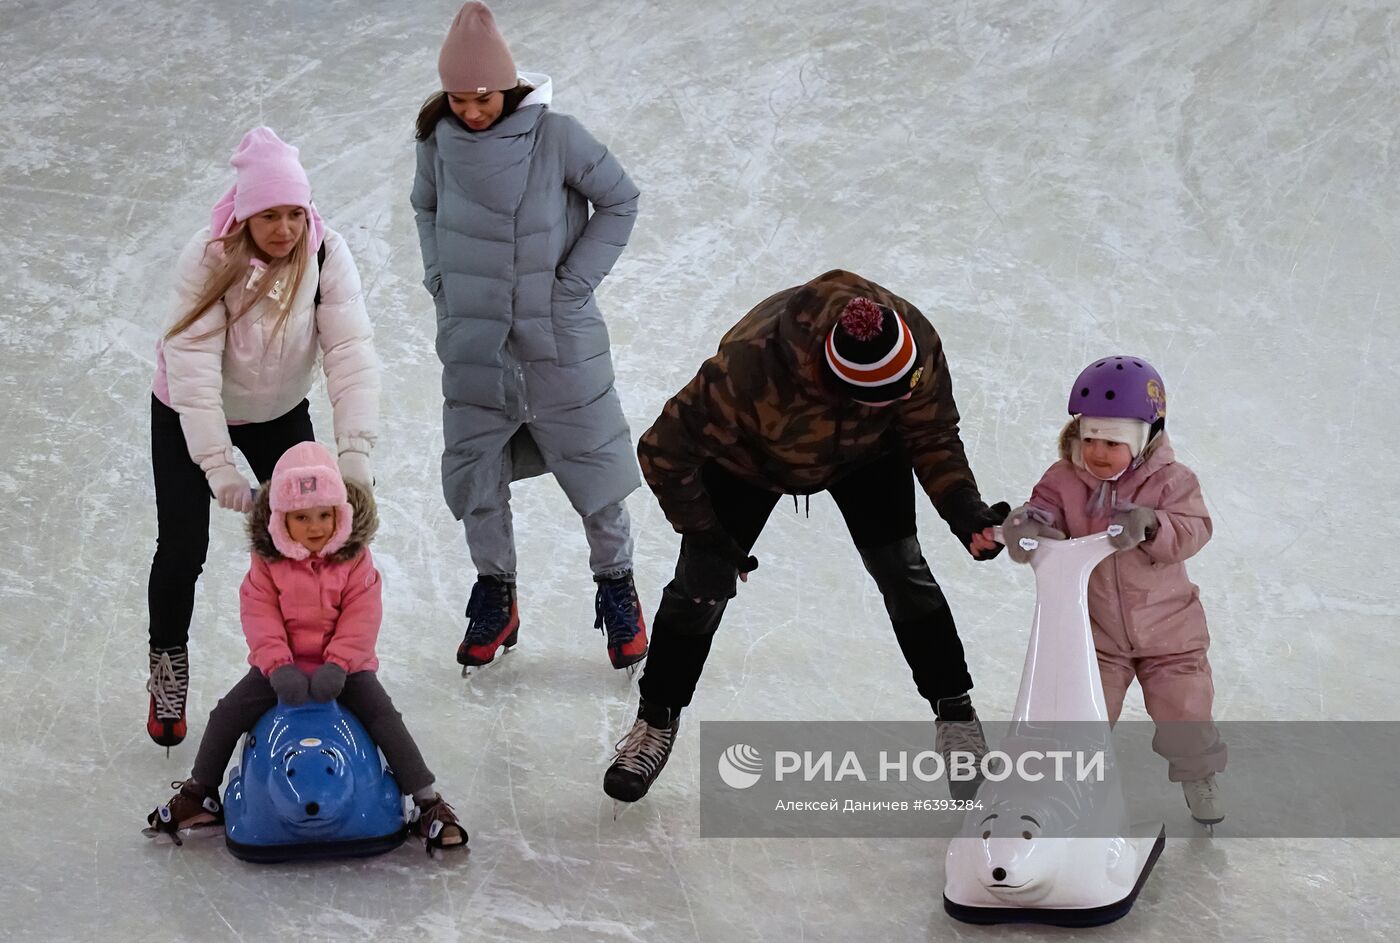 Открытие зимнего катка в арт-пространстве "Севкабель порт" в Санкт-Петербурге